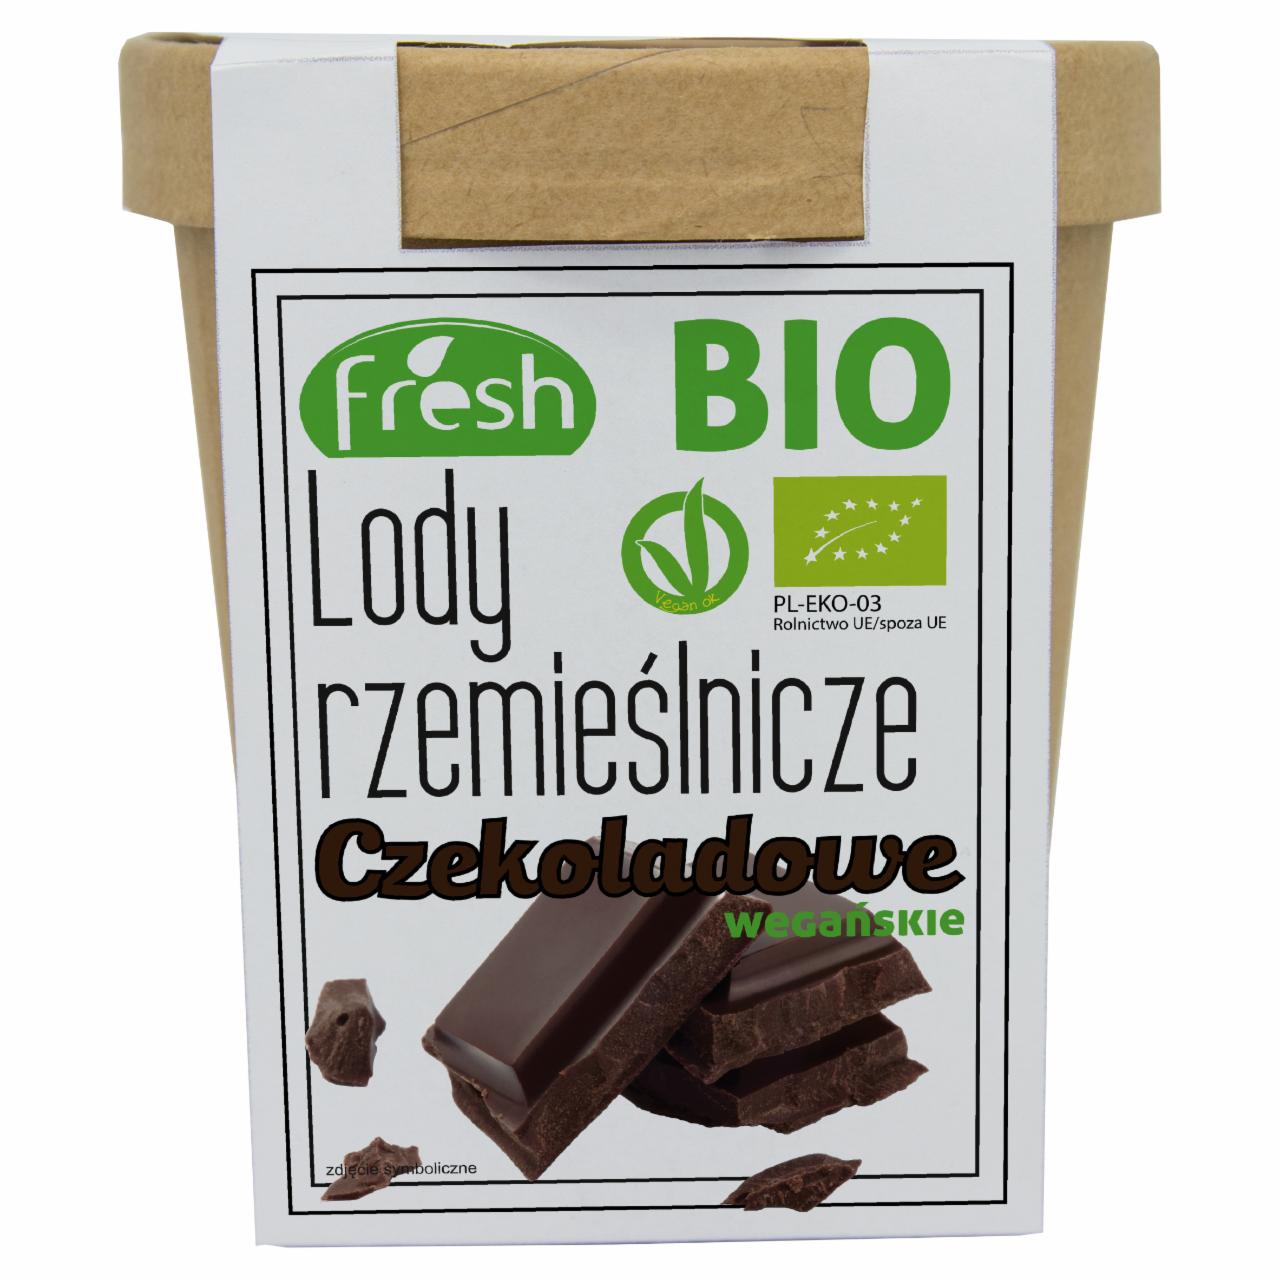 Zdjęcia - Bio lody rzemieślnicze czekoladowe wegańskie 470 ml